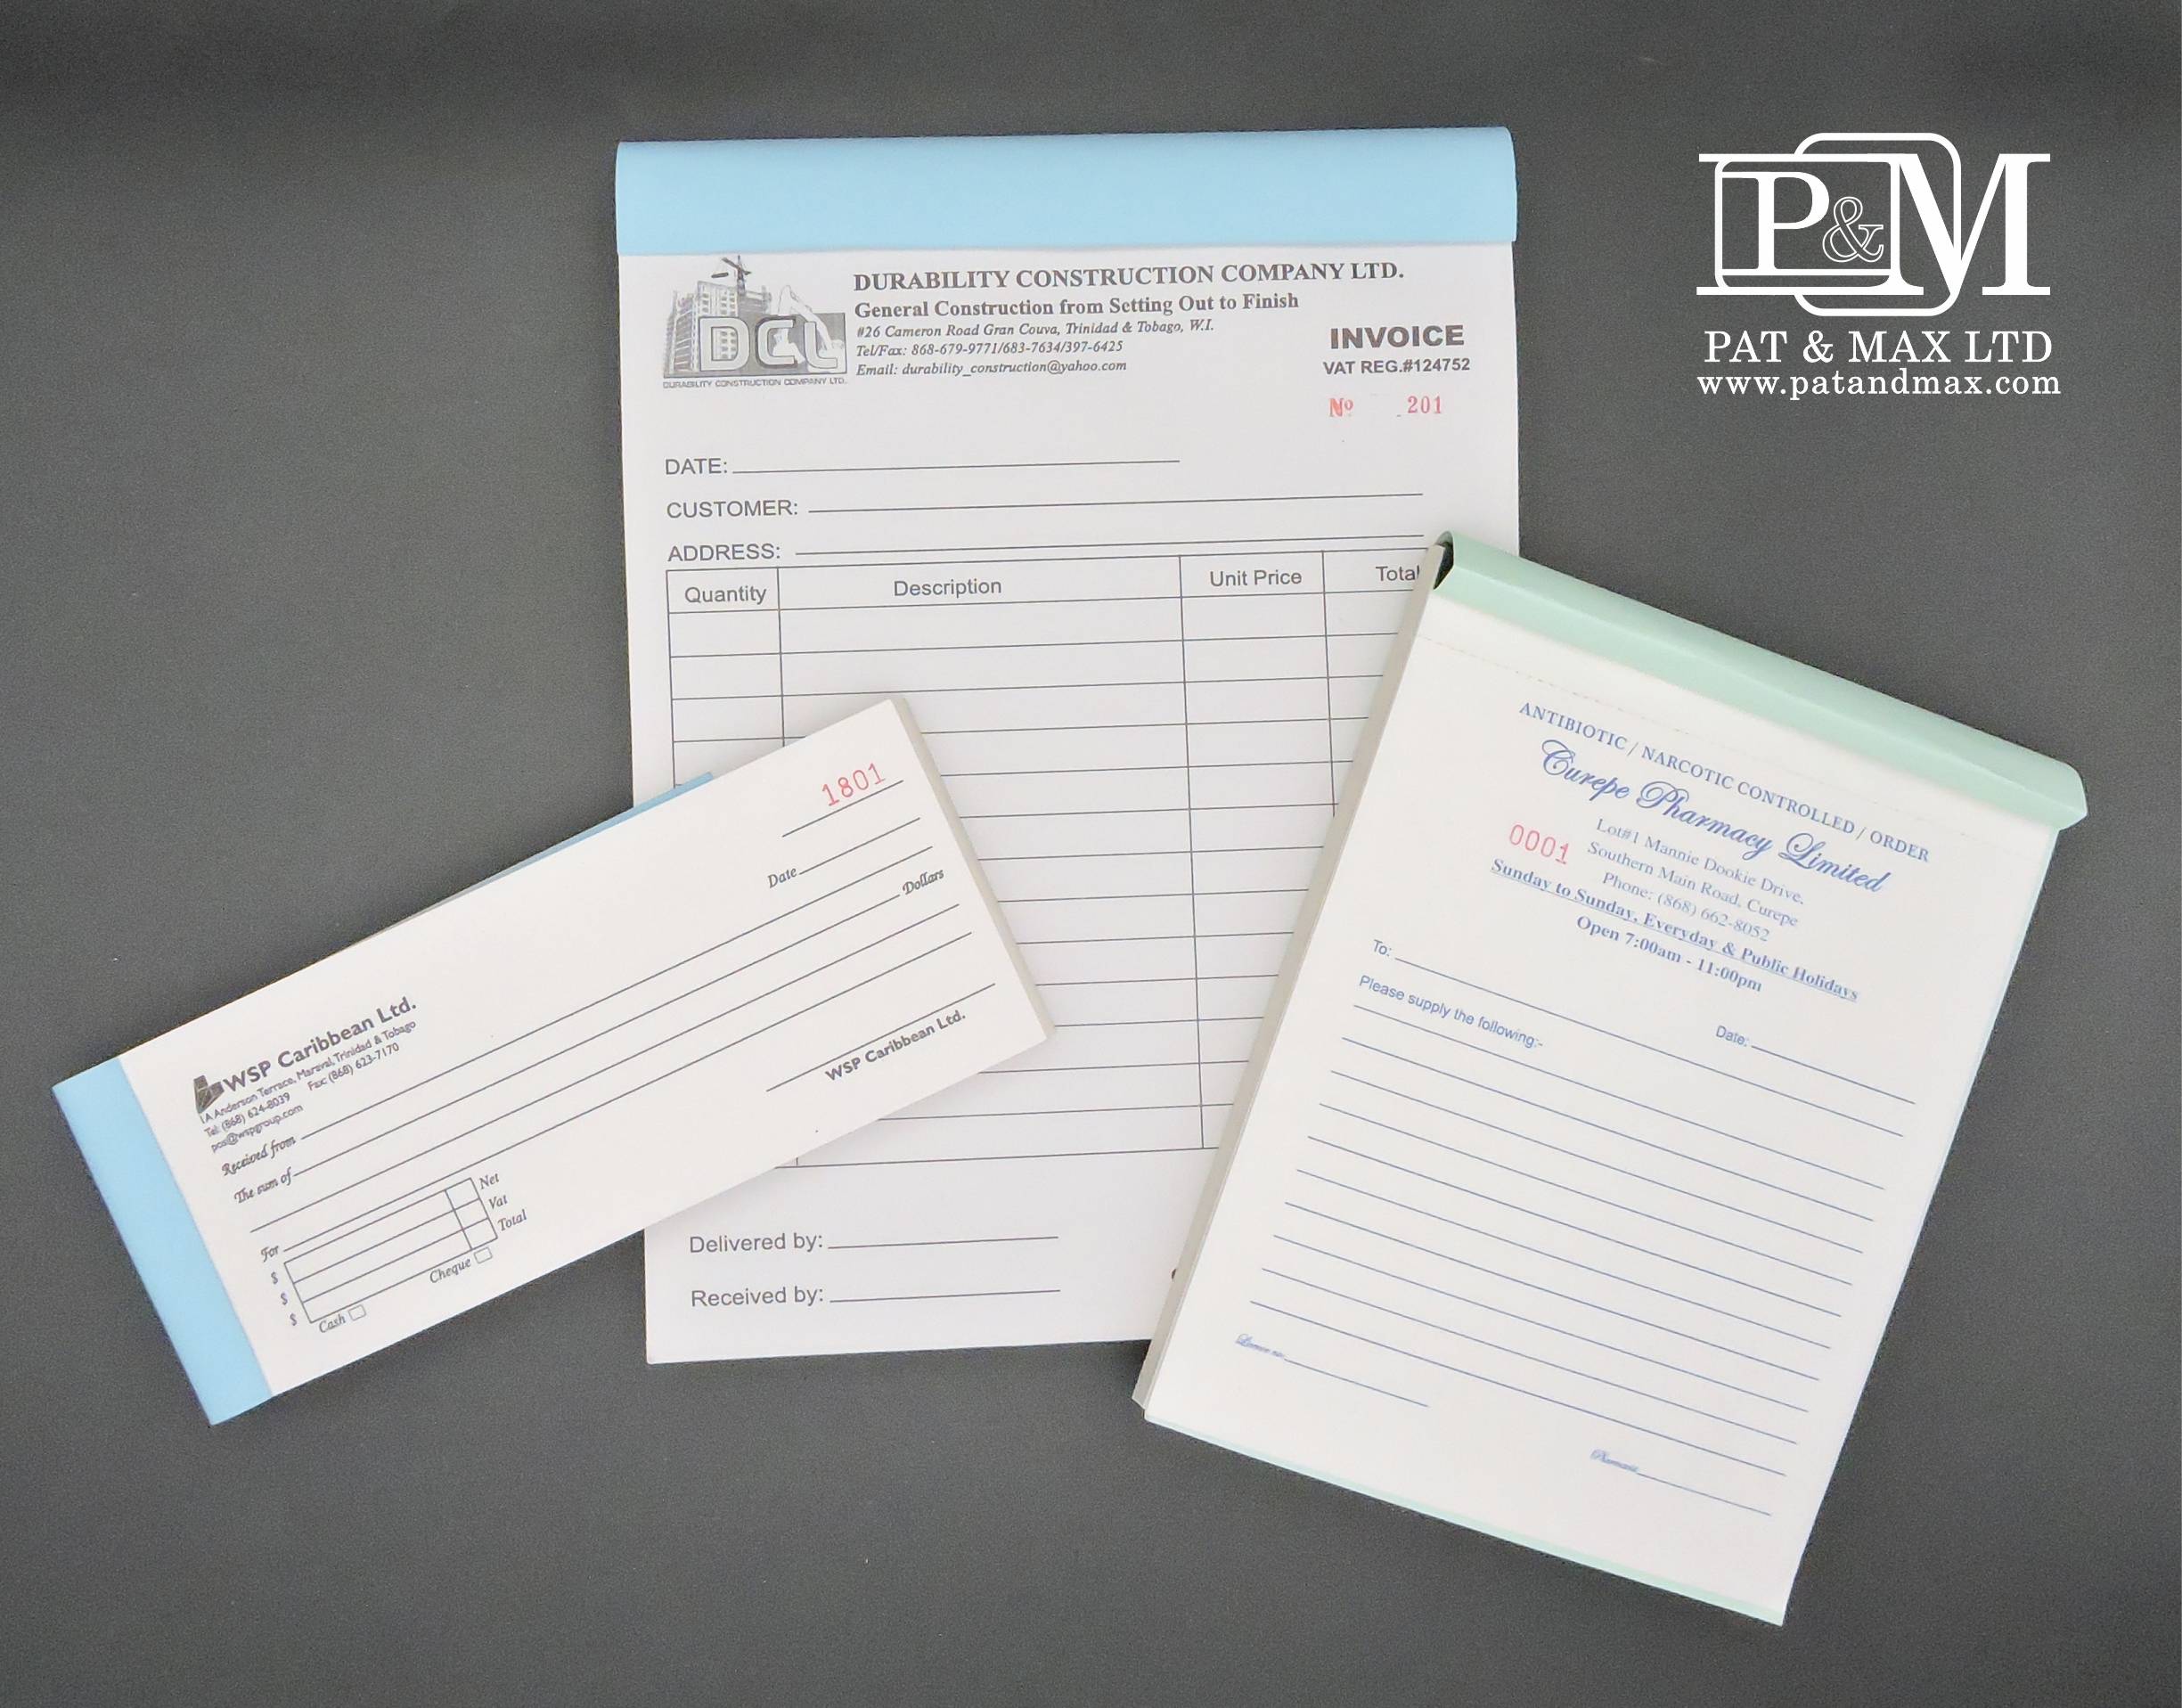 Pat & Max Ltd Plastic & ID Card Systems - IDENTIFICATION EQUIPMENT & SUPPLIES